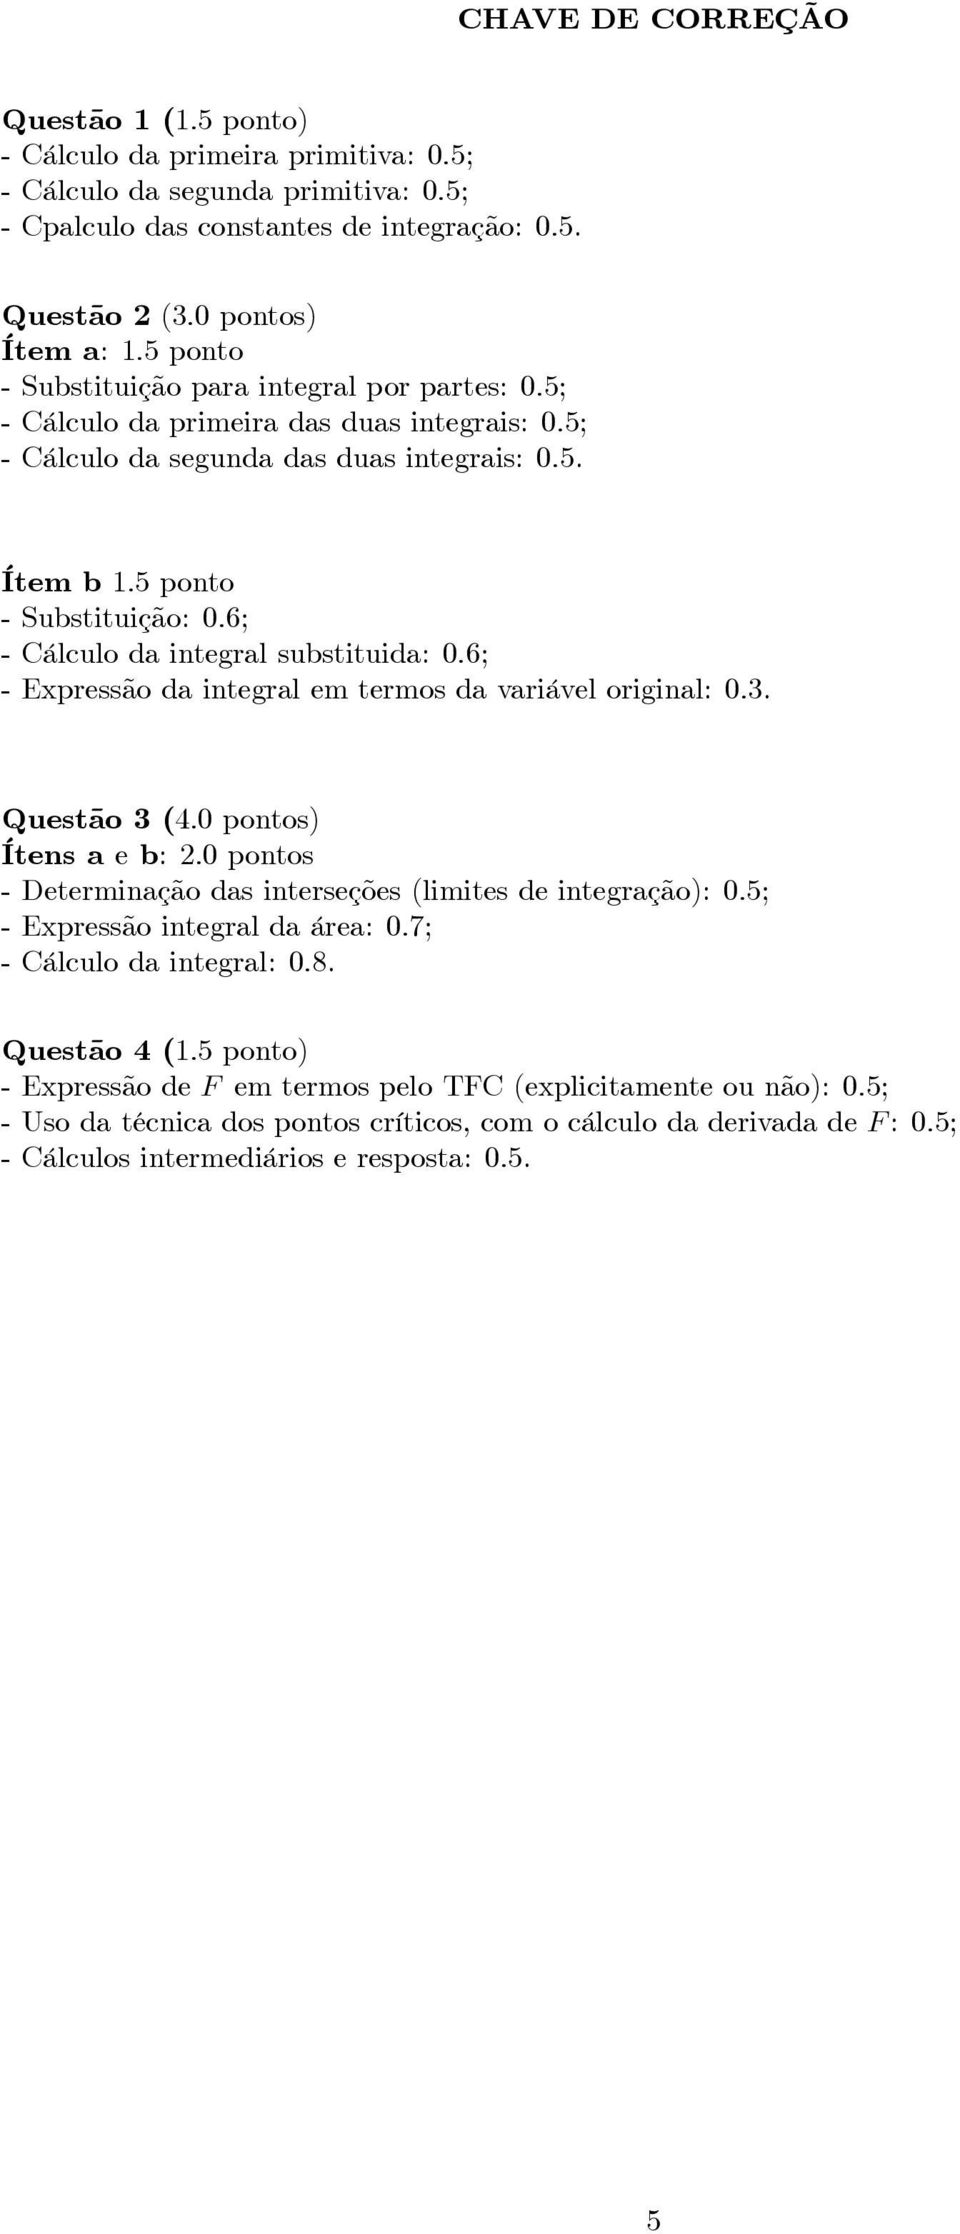 Ítem b 1:5 ponto - Substituição: :6; - Cálculo da integral substituida: :6; - Expressão da integral em termos da variável original: :.